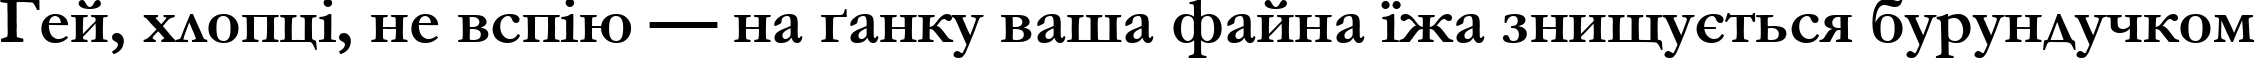 Пример написания шрифтом font253 текста на украинском